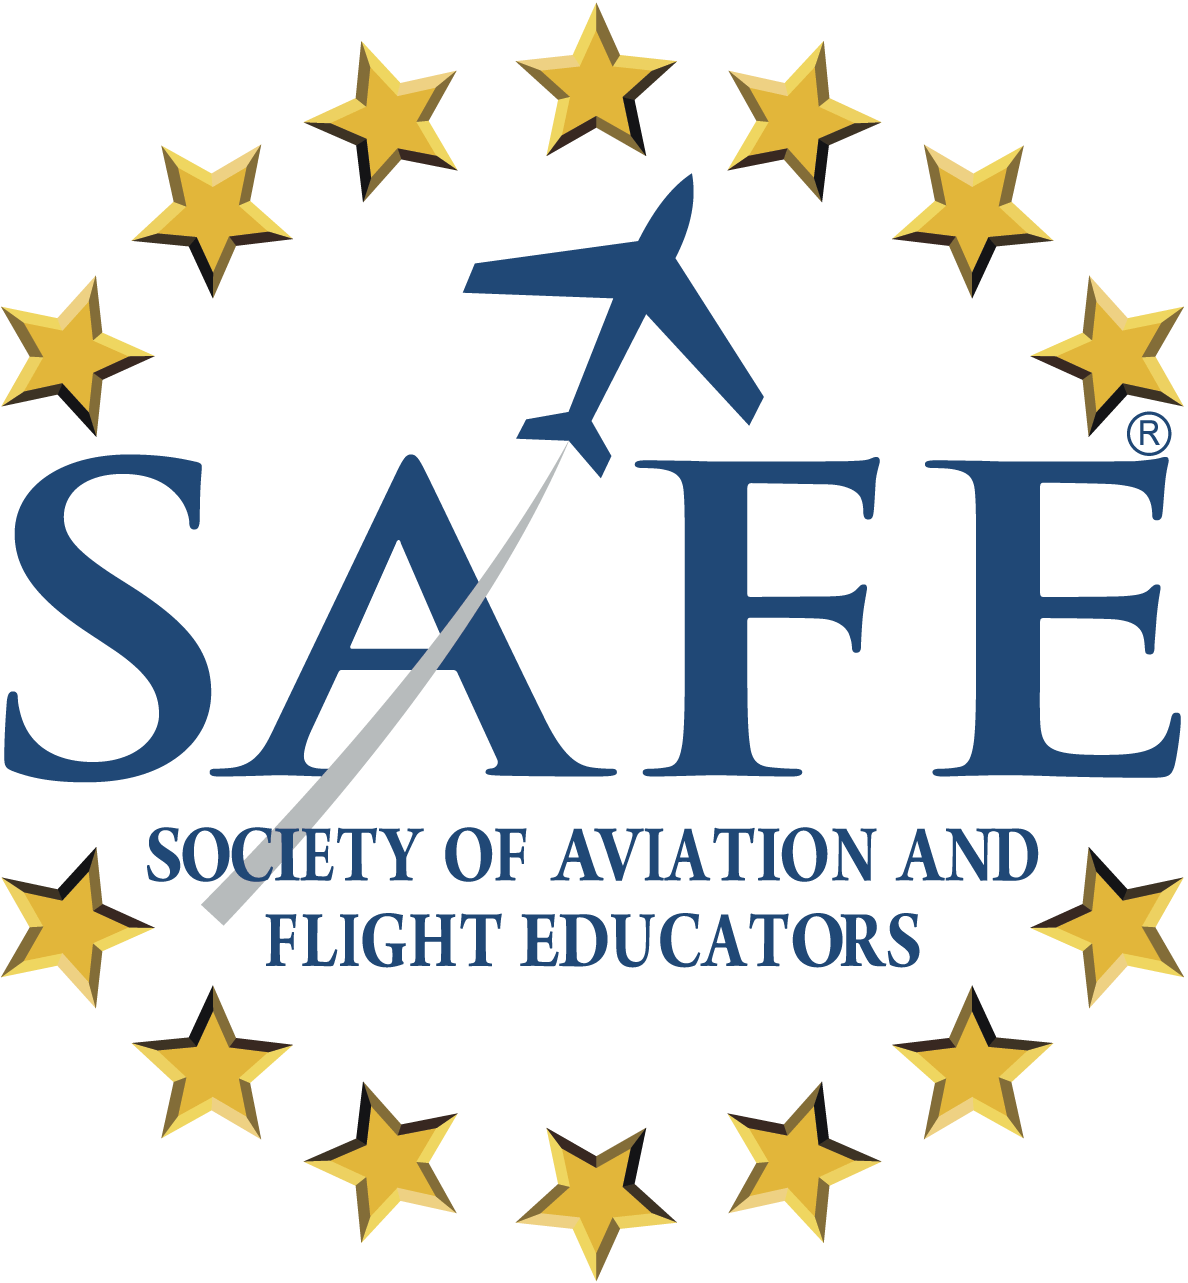 Society of Aviation and Flight Educators Logo